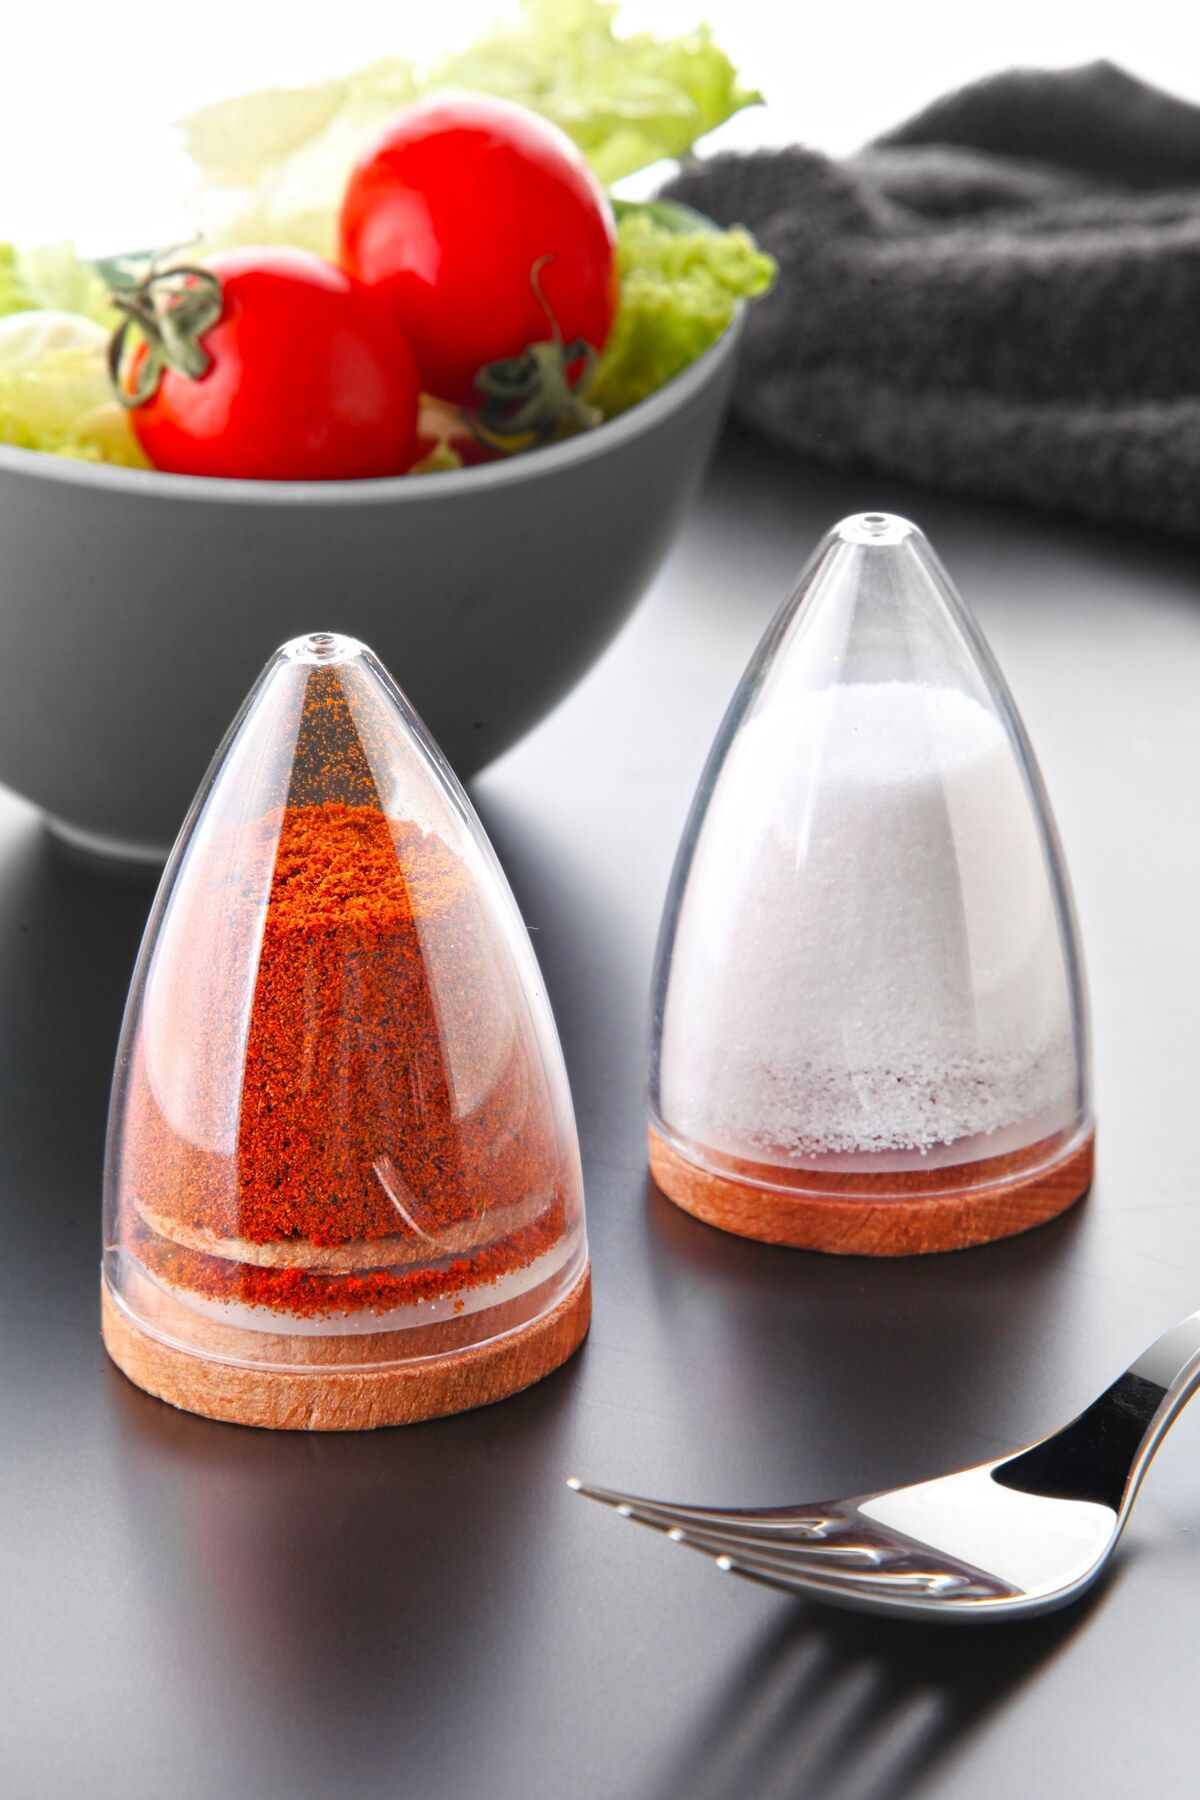 Kitchen Life 2 li Lux Ahşap Altlıklı Piramit Modelli Tuzluk Biberlik Seti-Silikon Kapaklı Damla Baharatlık 80 ml